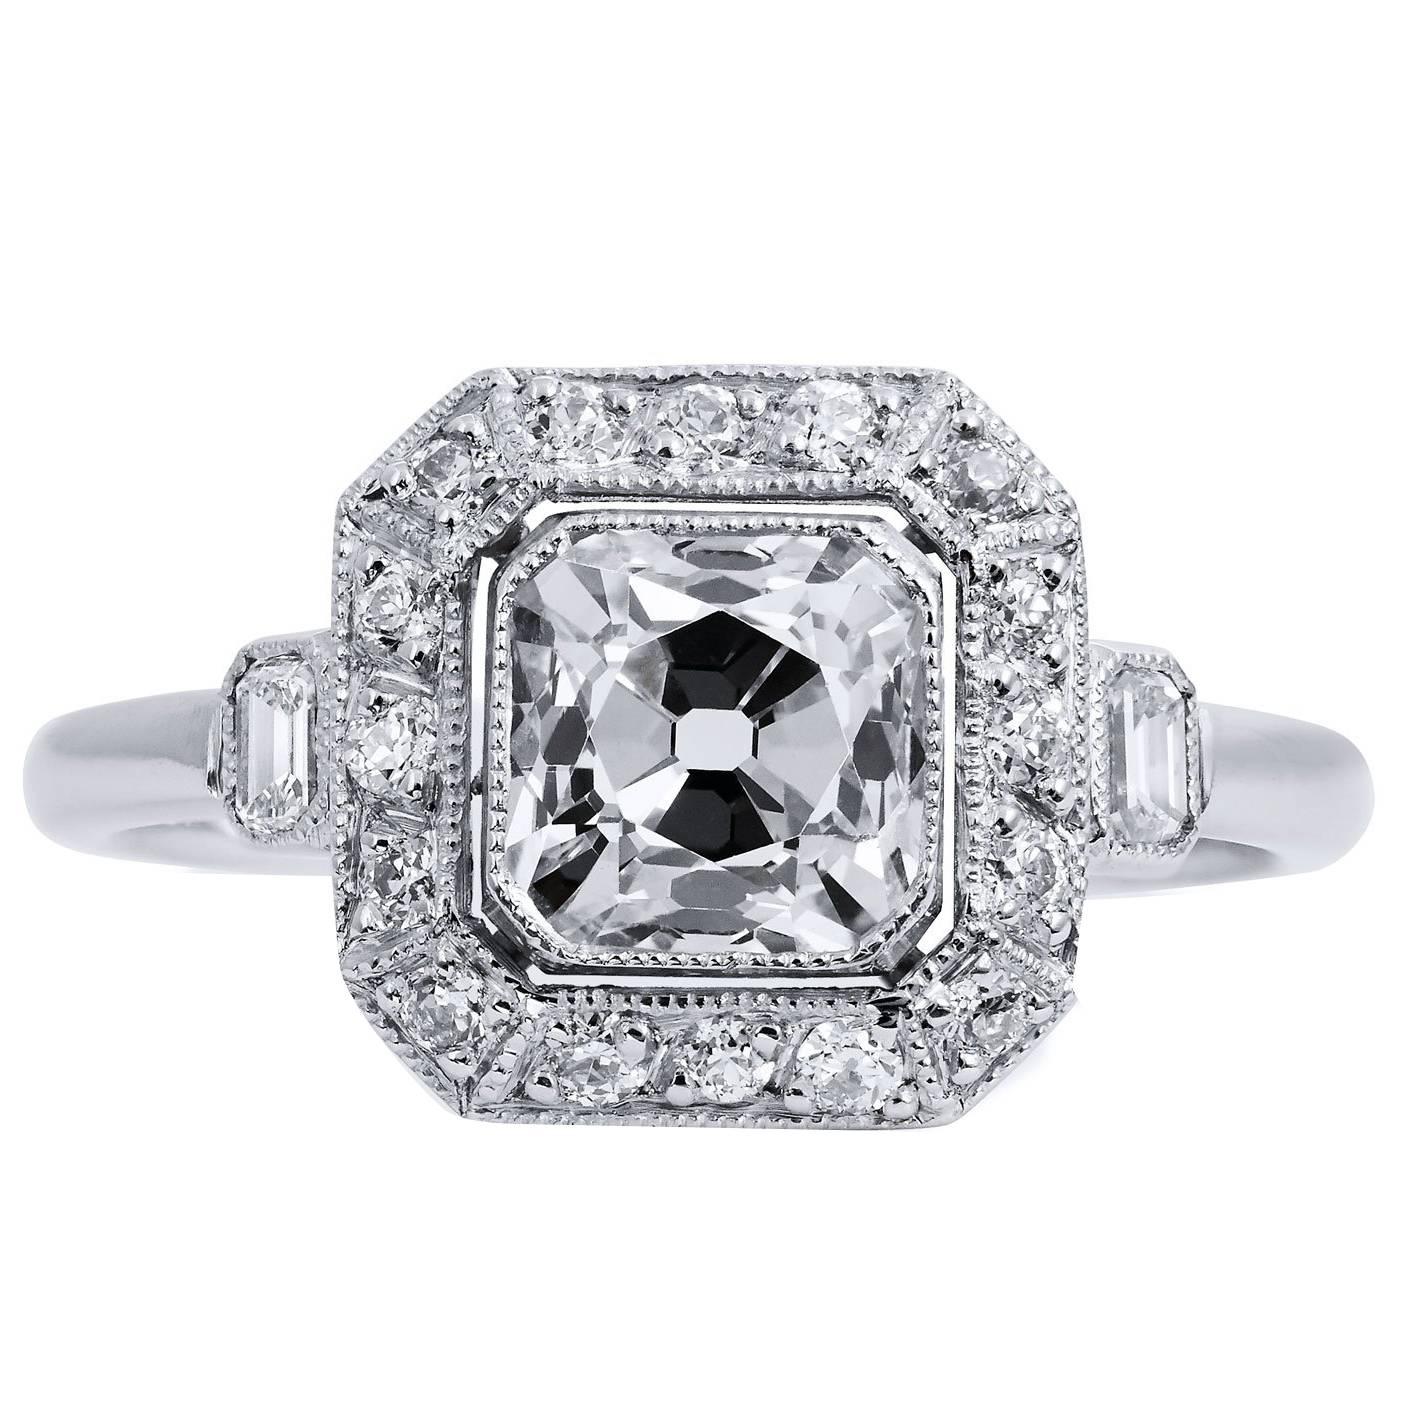 Peruzzi 1.29 Carat Cut Diamond Platinum Engagement Ring